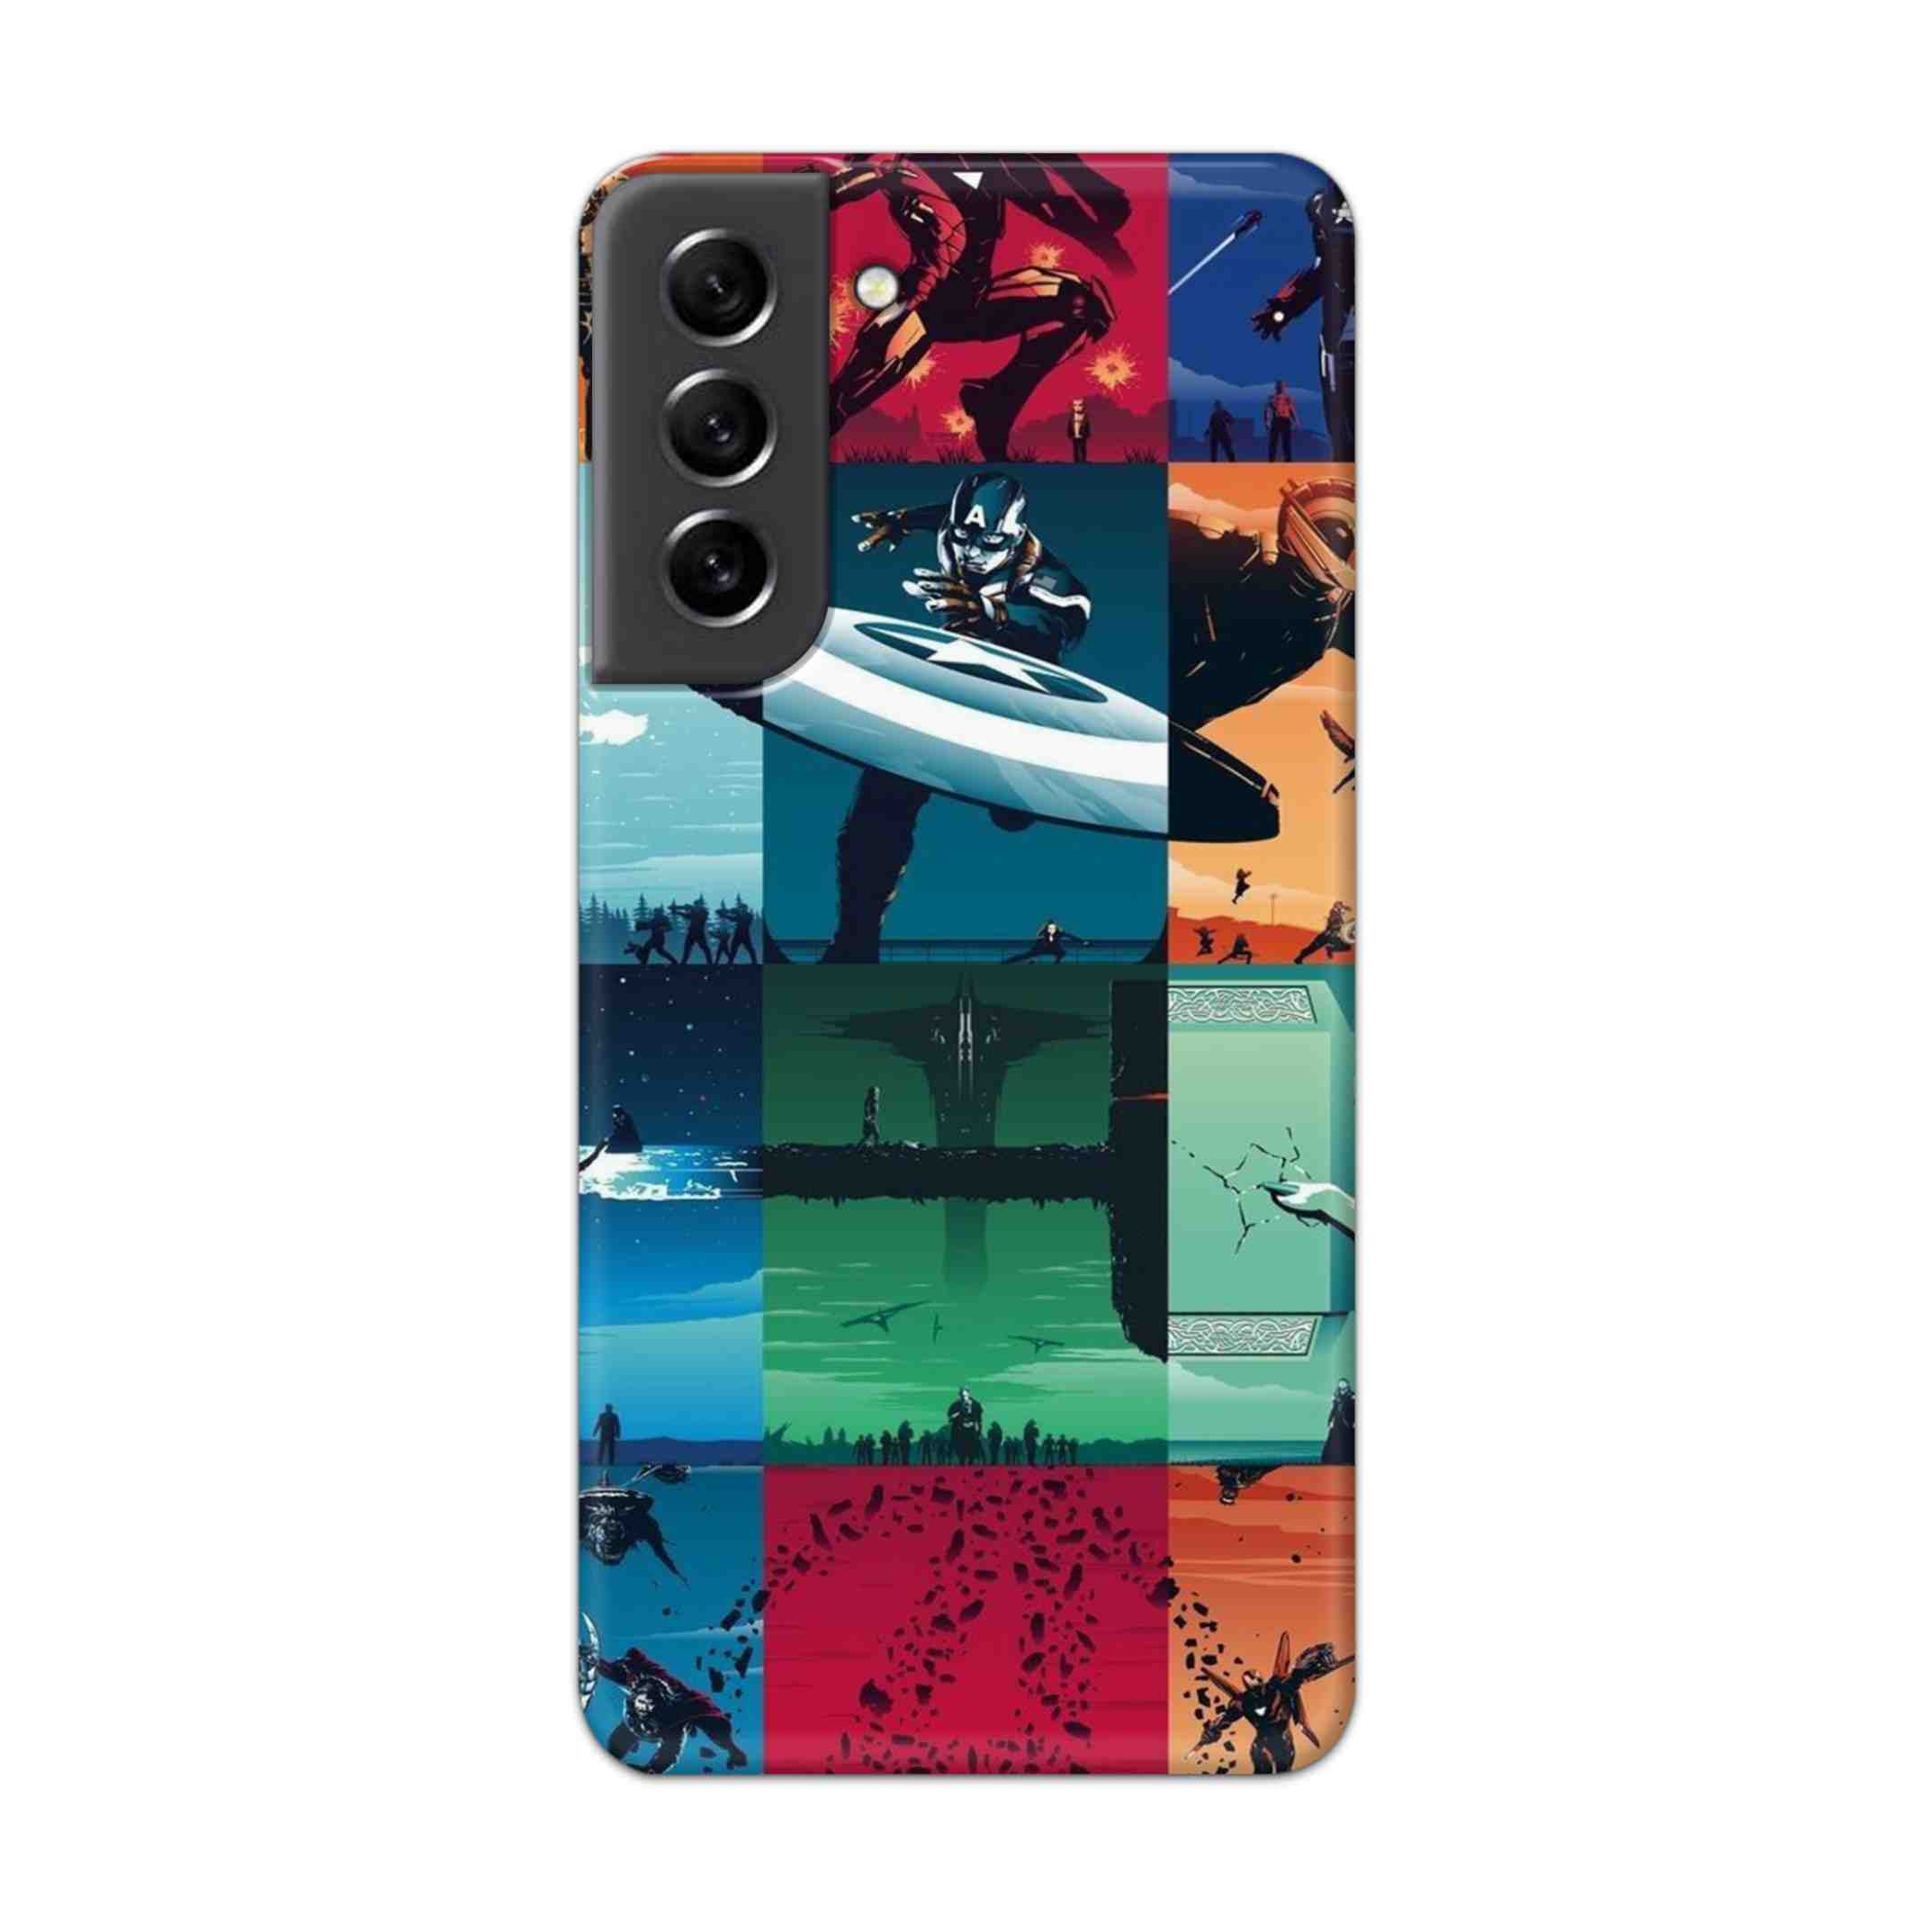 Buy Avengers Team Hard Back Mobile Phone Case Cover For Samsung S21 FE Online